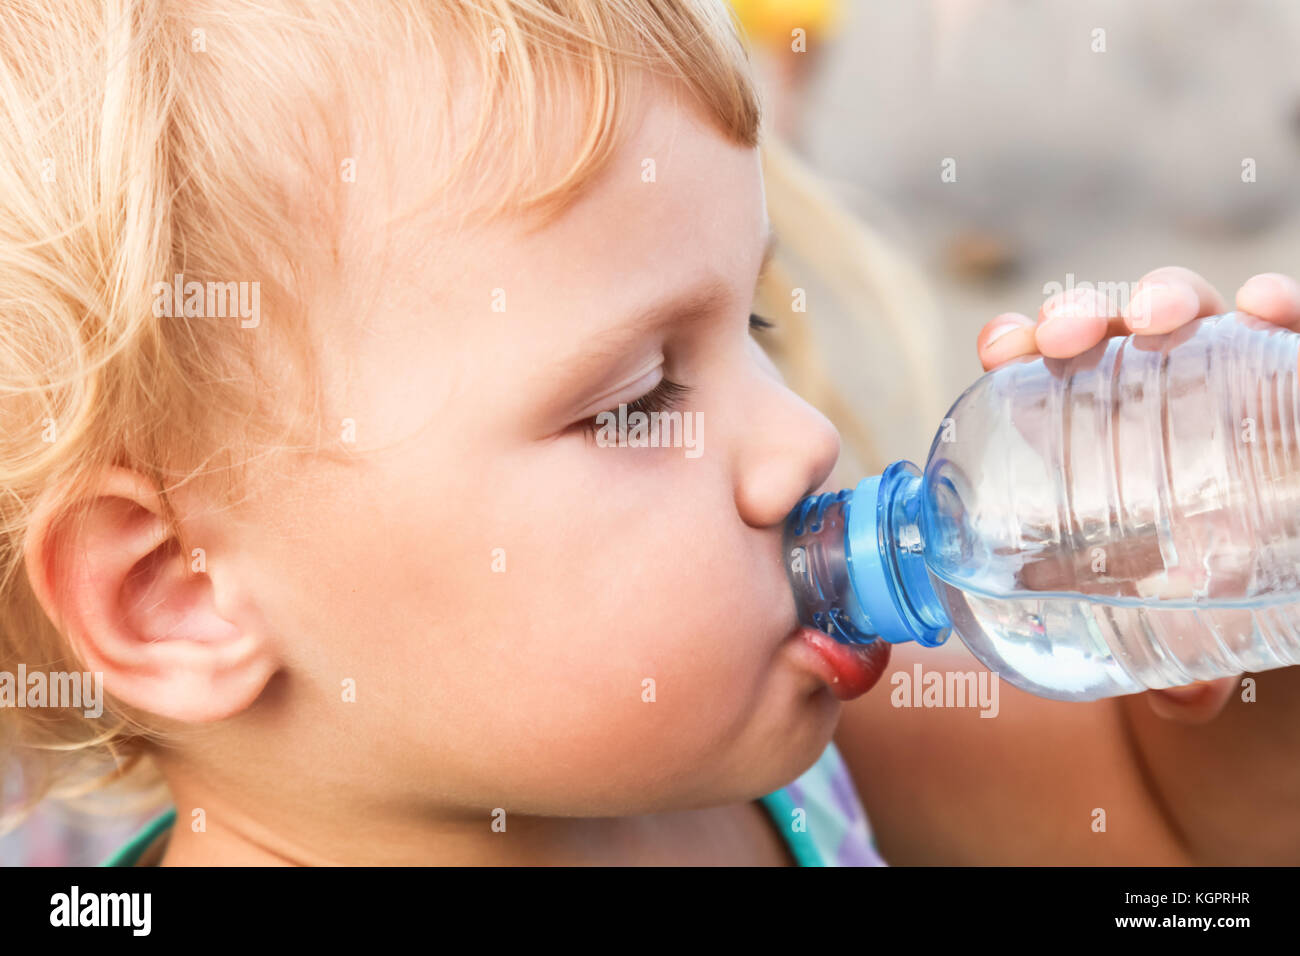 Blond caucasien enfant boire l'eau de bouteille en plastique, Close up photo plein air Banque D'Images